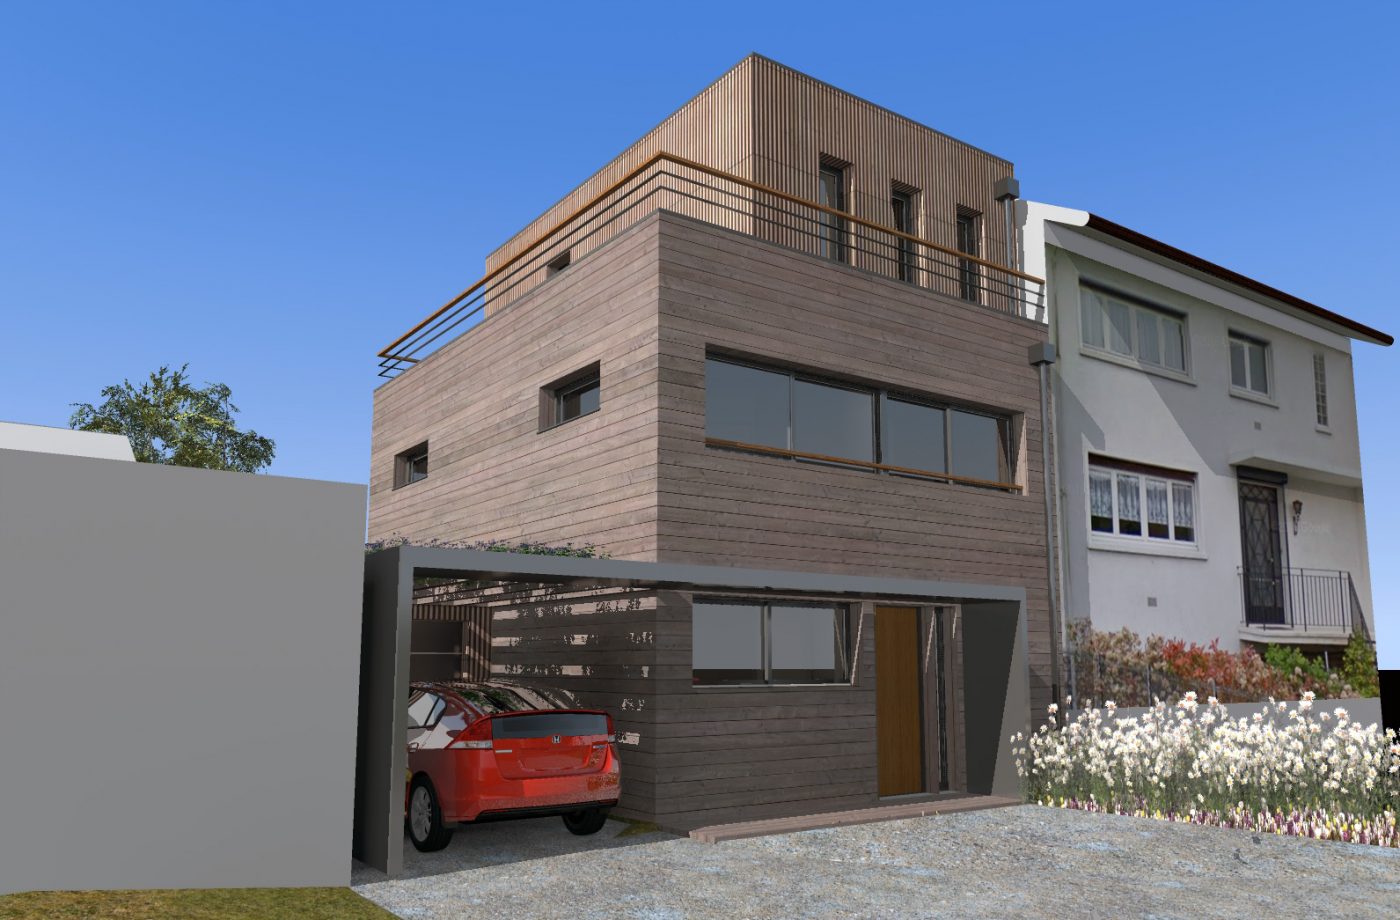 Philippe_Zerbib_Architecte_construction_maisons_ossature_bois_projet_maison-Vollaire-View 0#1